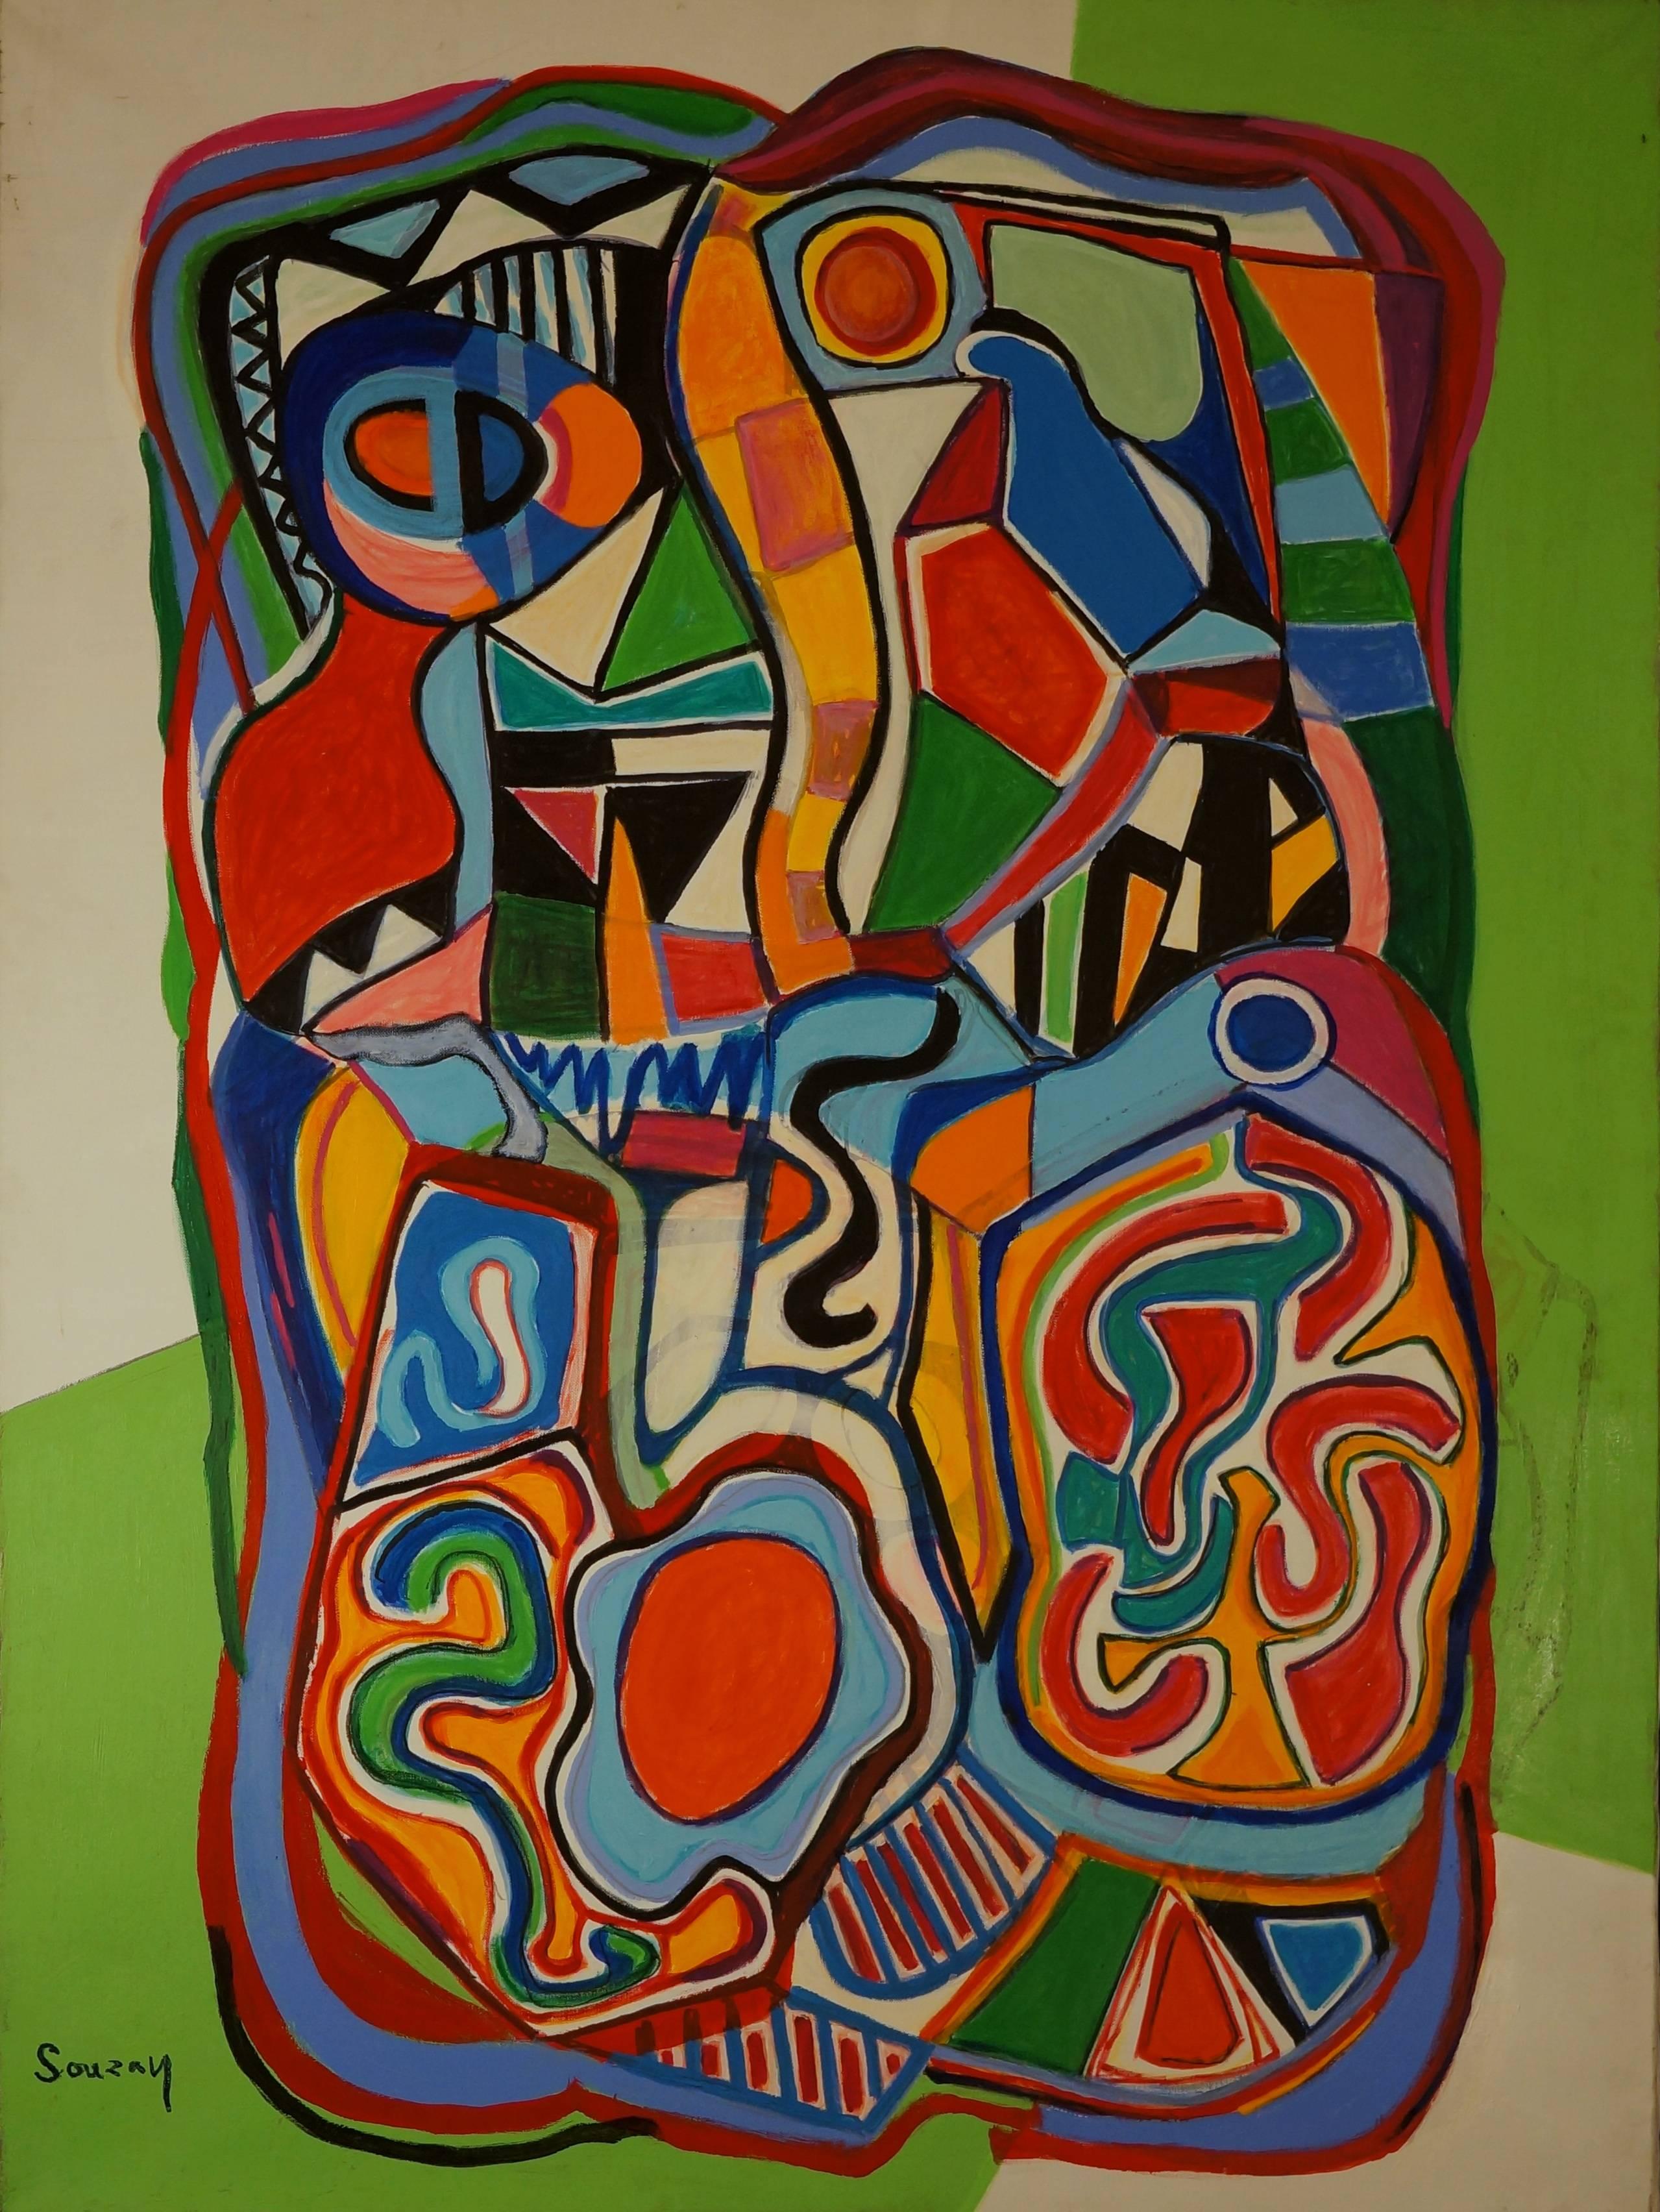 Abstract Painting Gérard Souzay - Composition abstraite SII, 1960-65, peinture à l'huile, 130 x98 cm